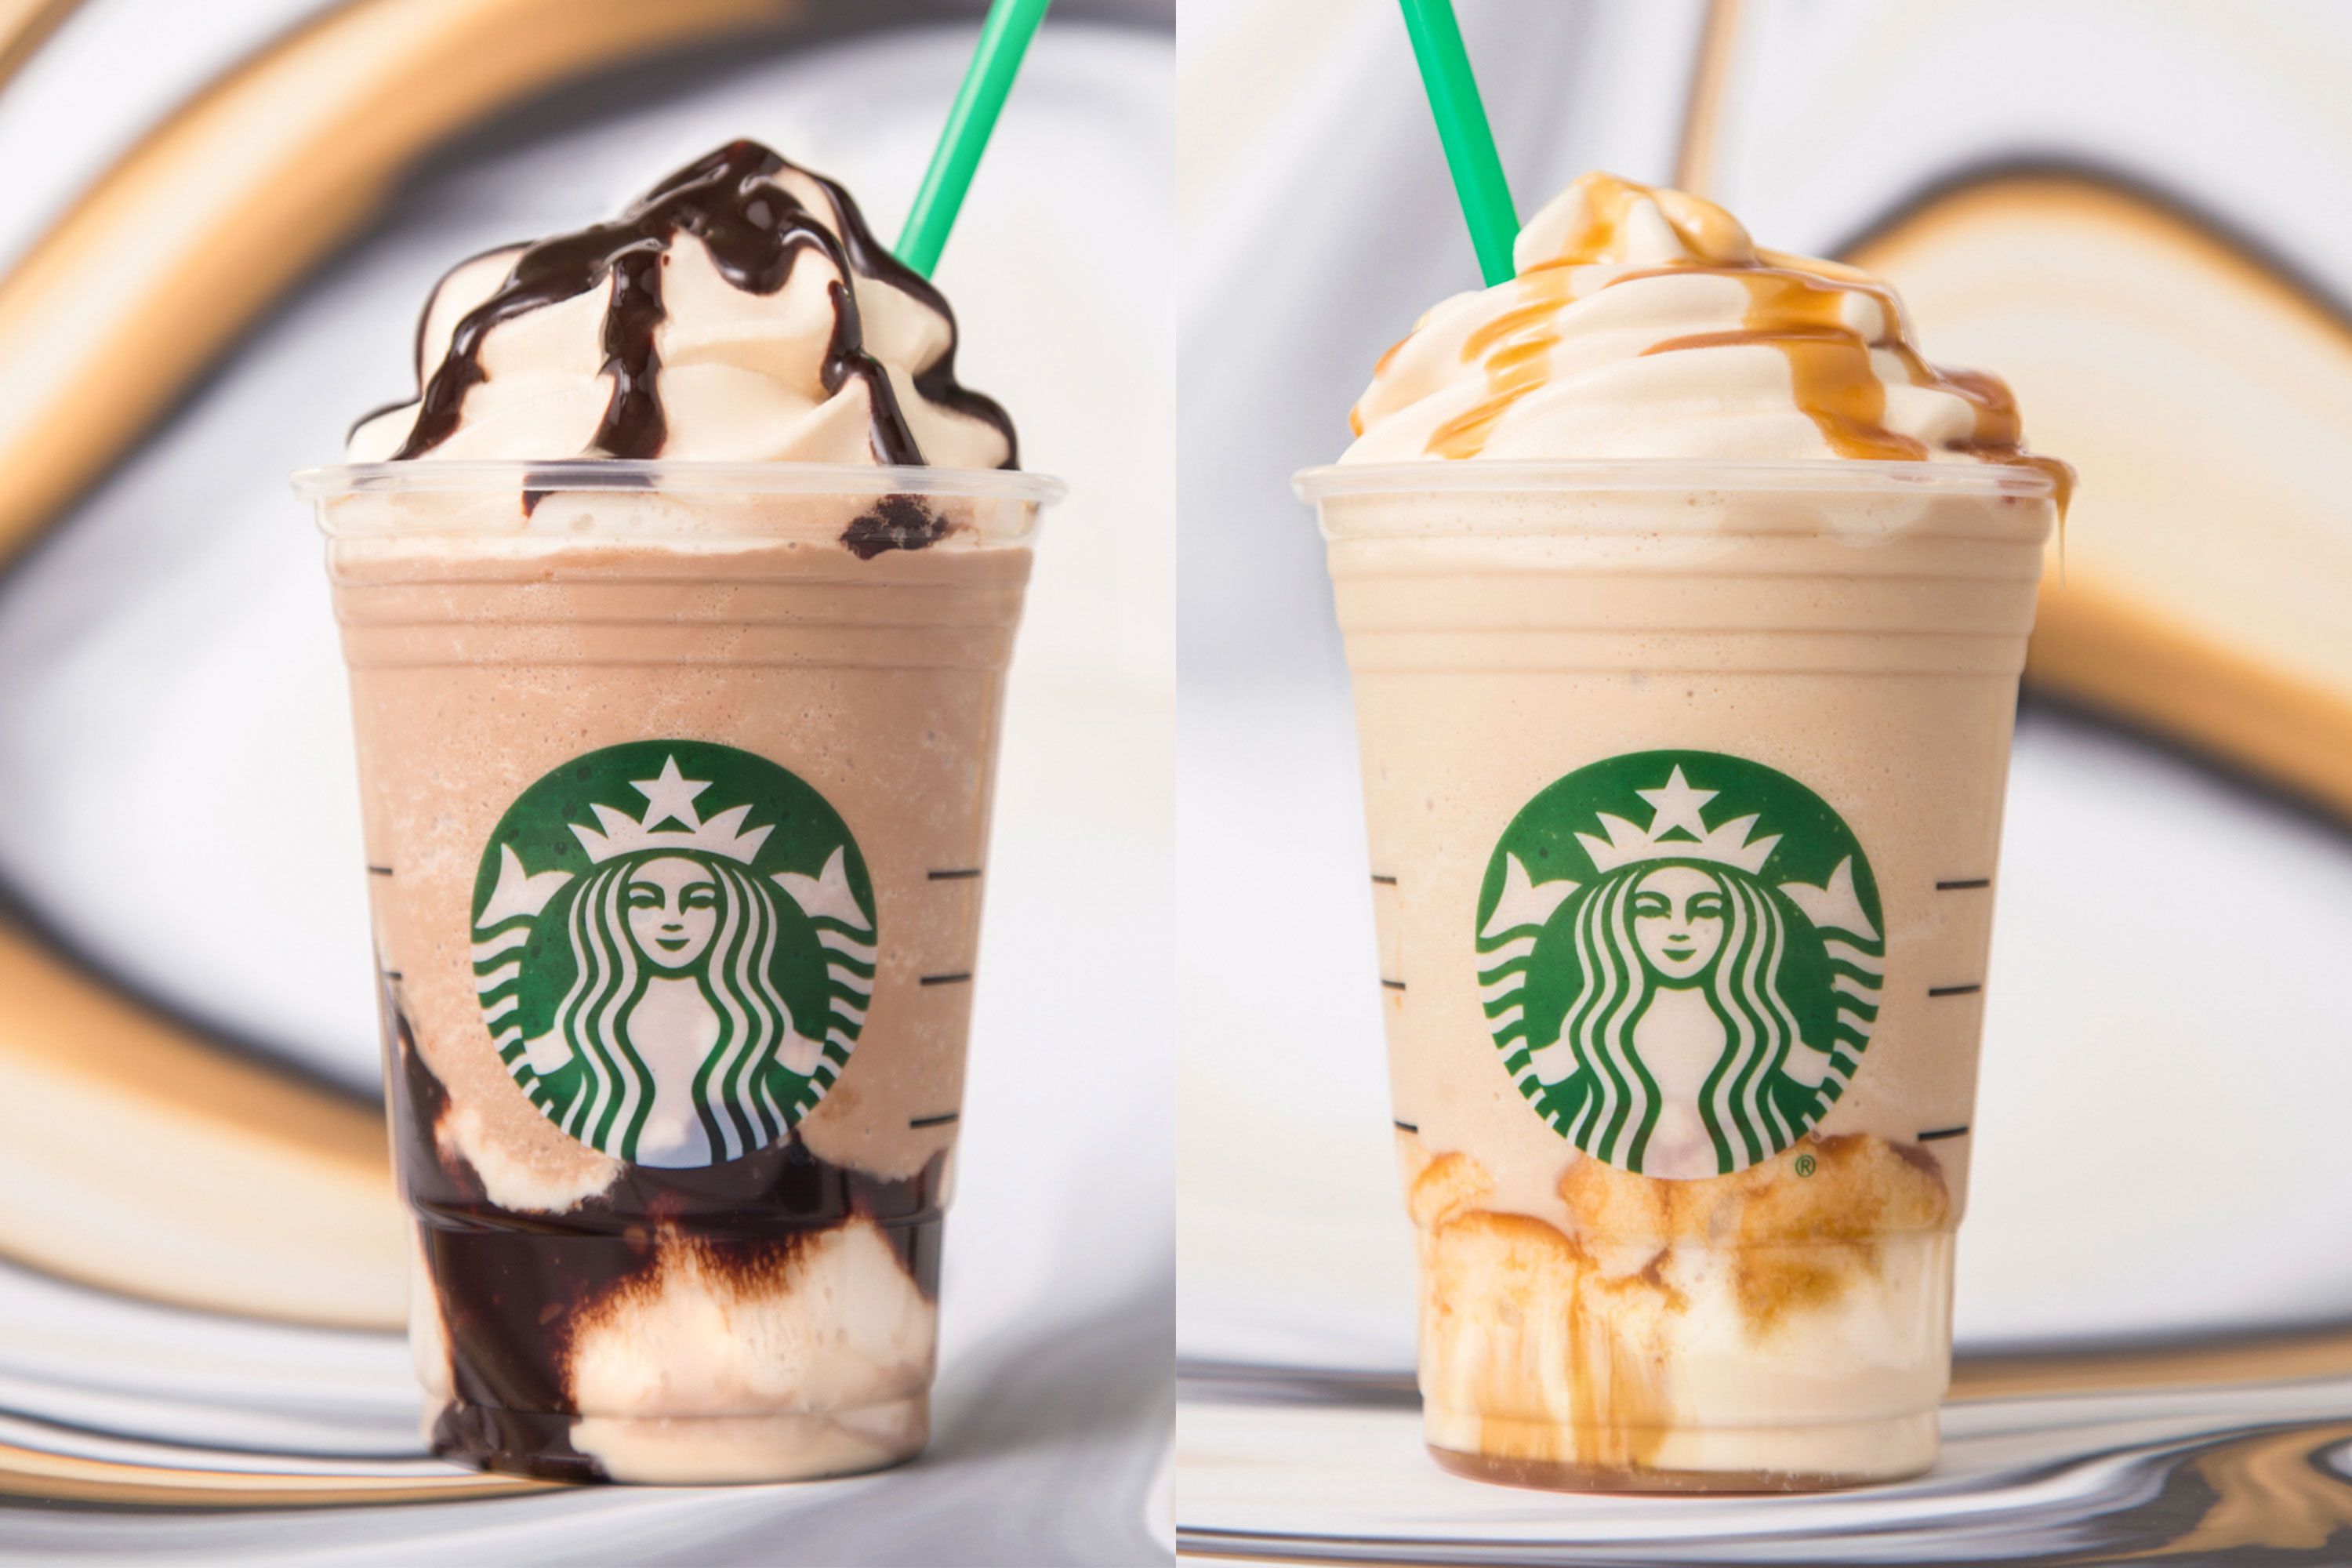 New Starbucks Frappuccino Flavors - Triple Mocha Frappuccino, Ultra Caramel Frappuccino